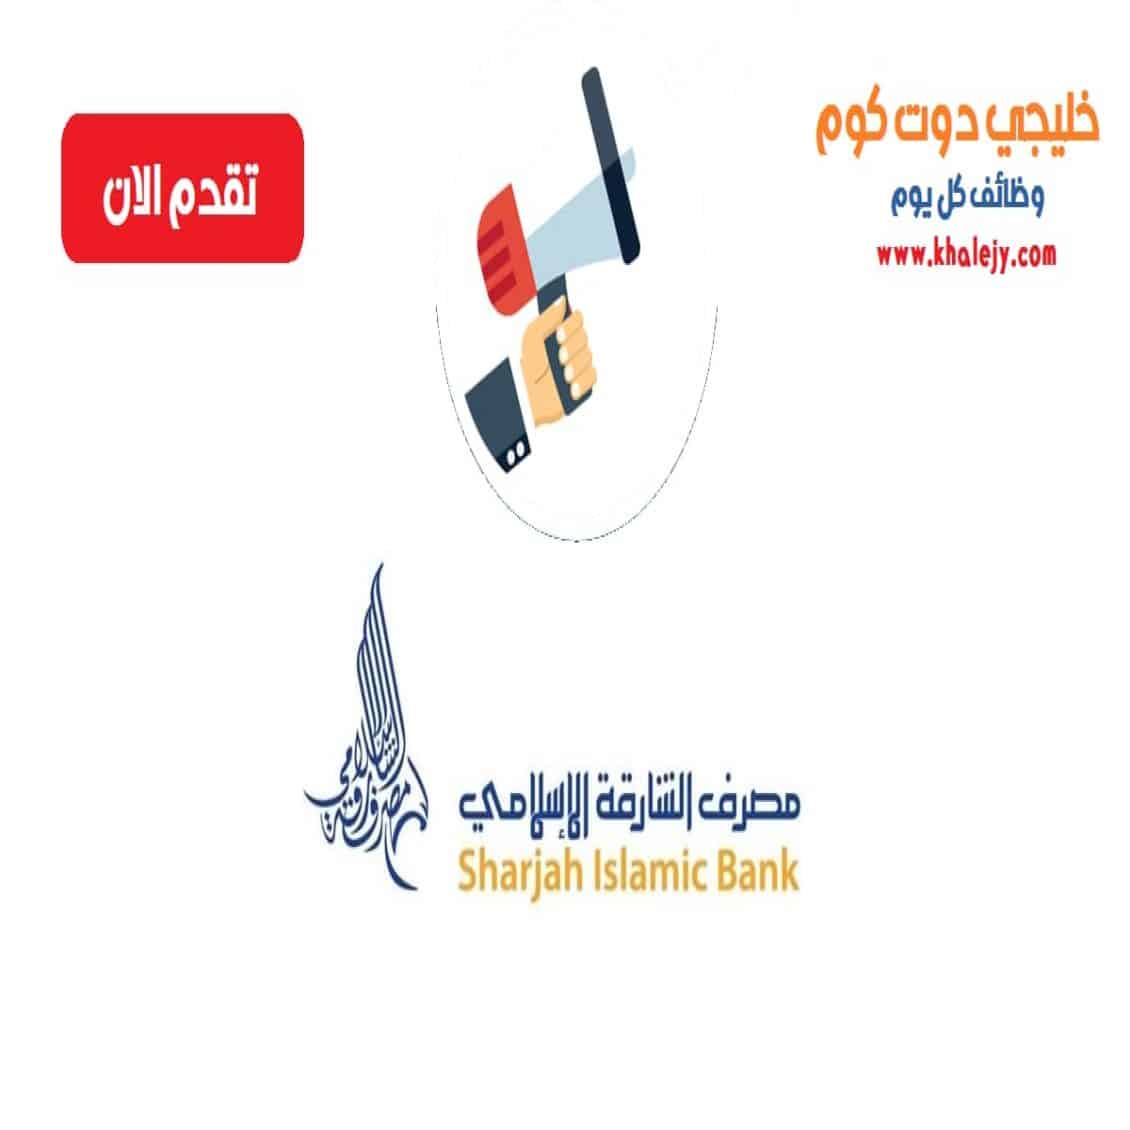 وظائف مصرف الشارقة الاسلامي في الامارات